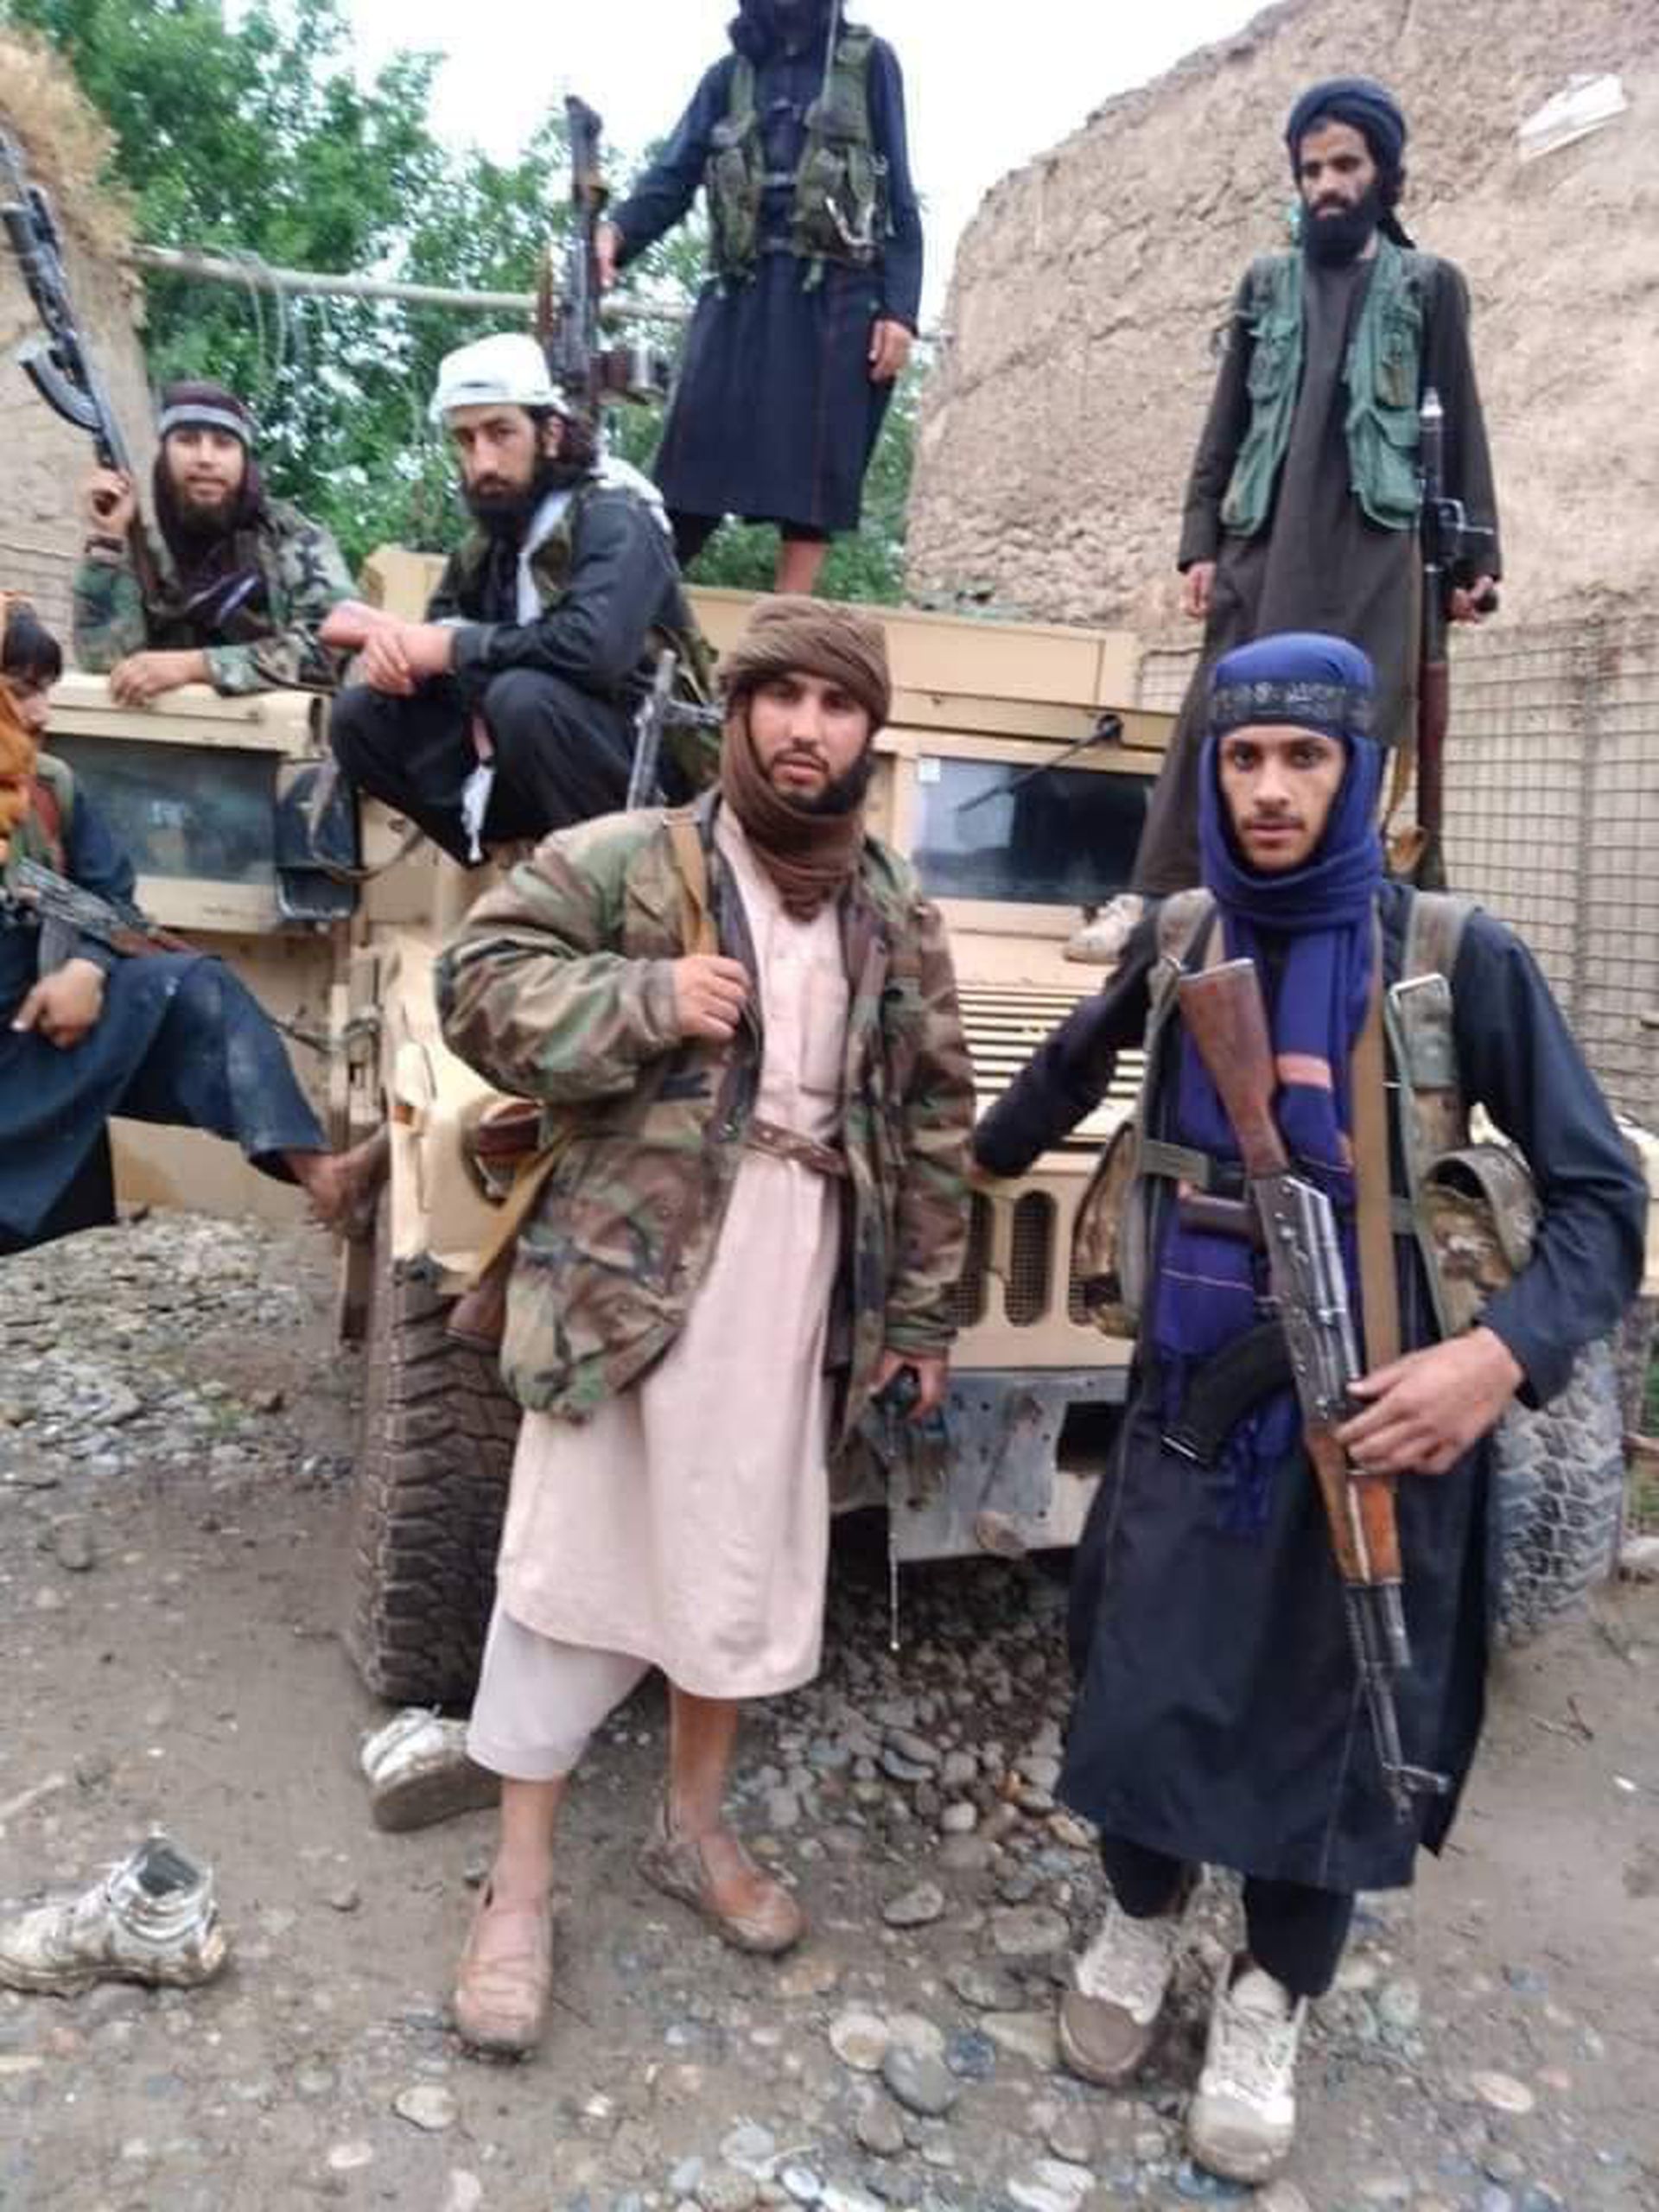 这是一组参与攻击行动的塔利班普通参战人员。塔利班另有精锐部队“红色部队”，此次围攻并未出动。（liveumap网页截图）